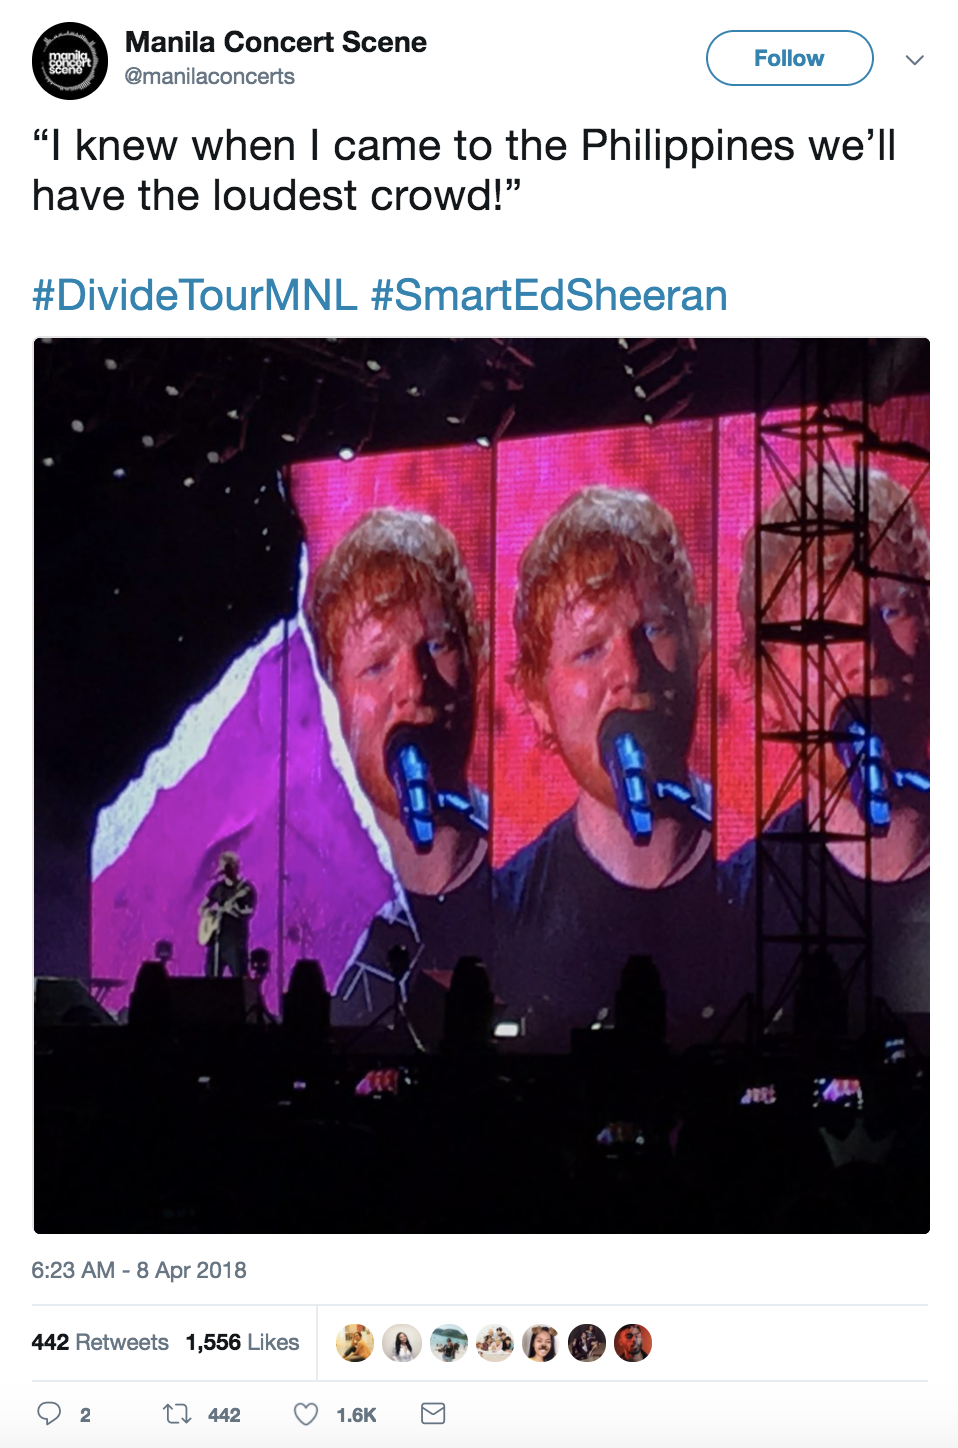 ed sheeran world tour philippines